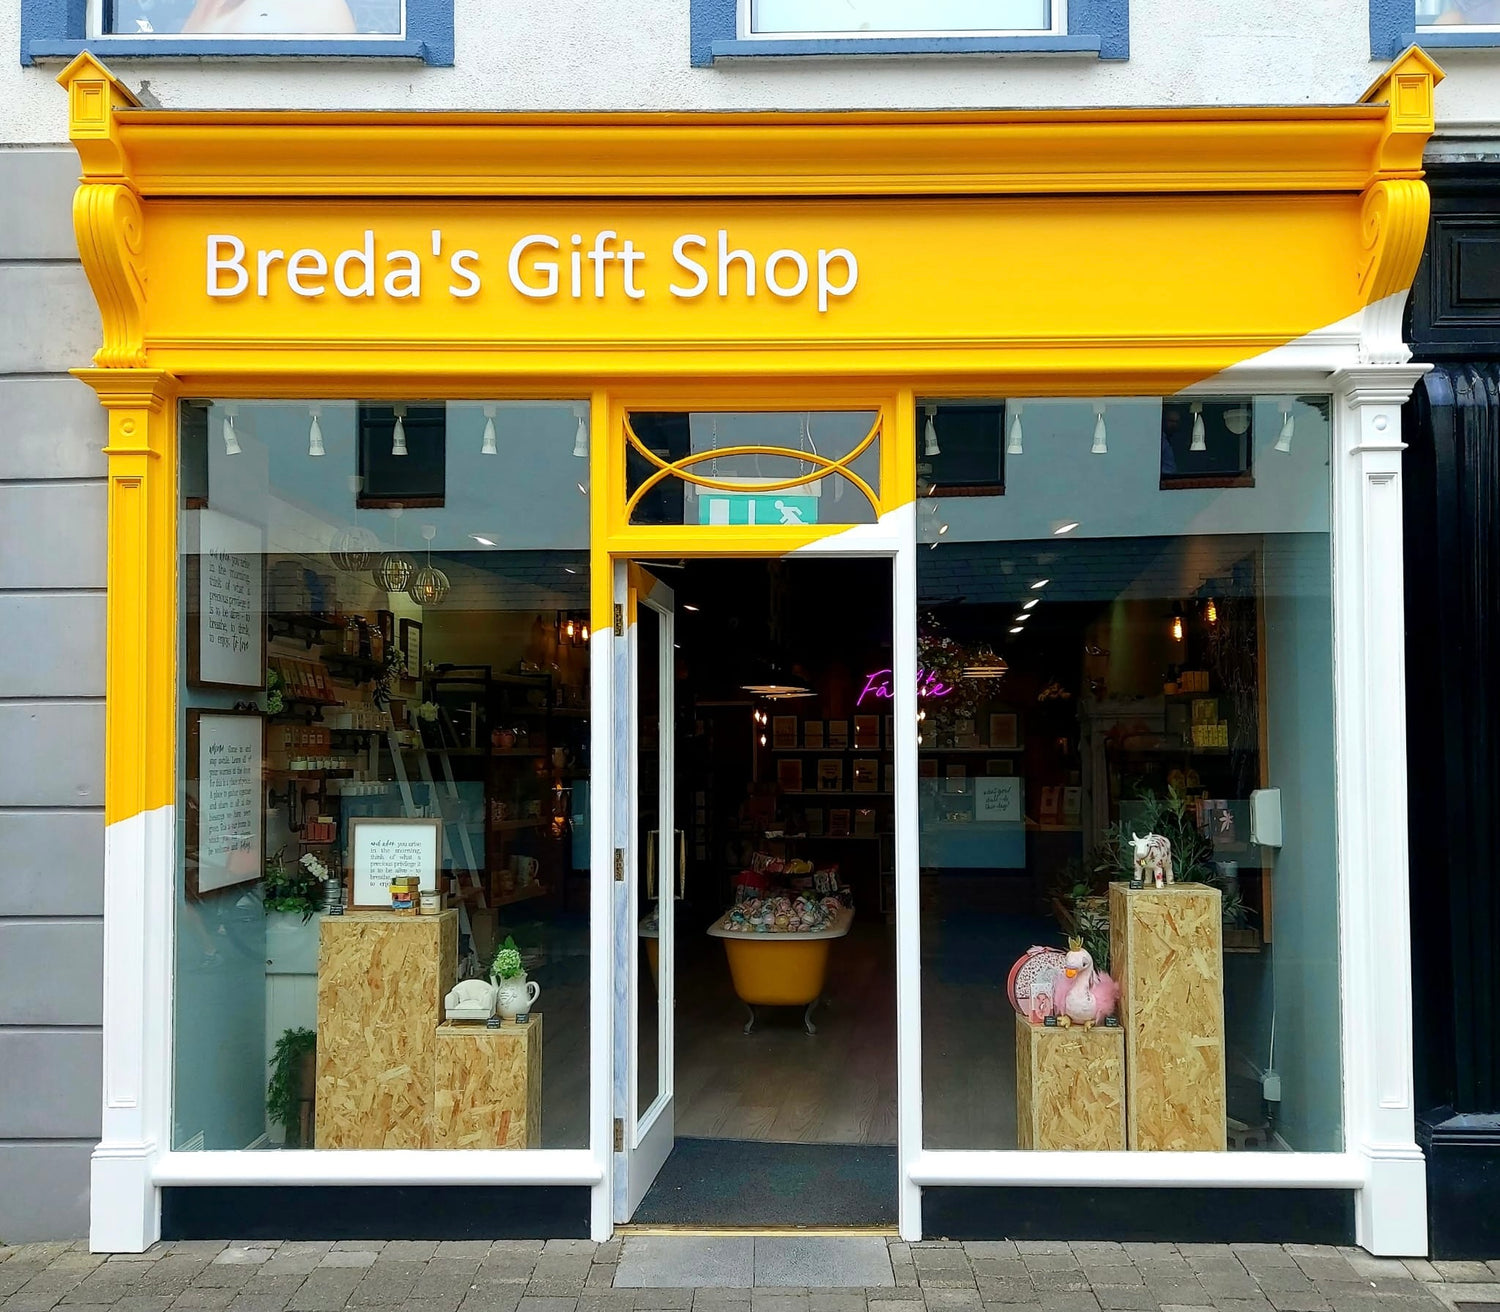 Shopfront of Breda's Gift Shop in Kilkenny.